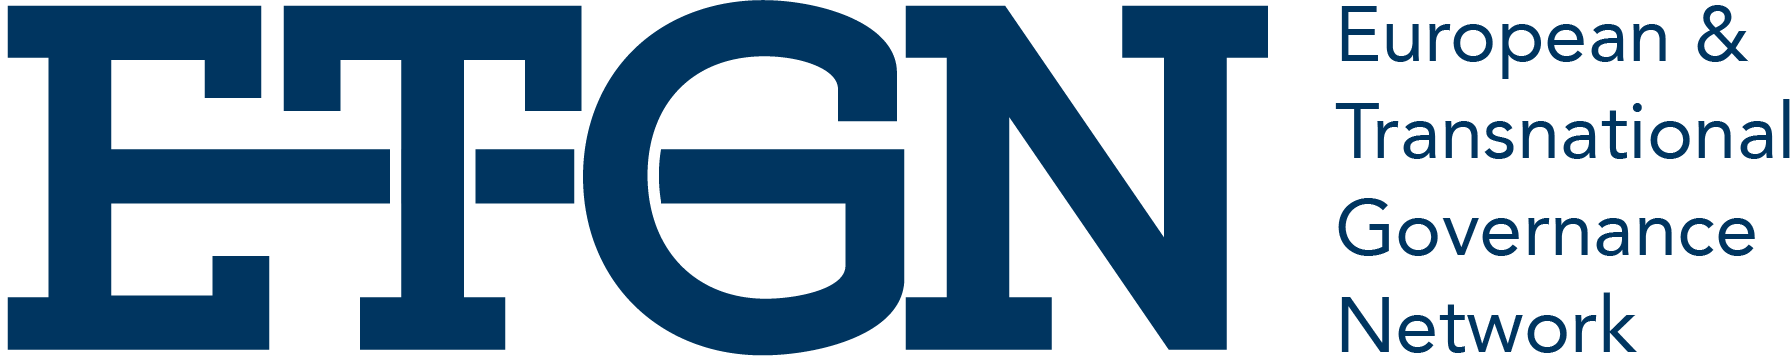 ETGN - European Transnational Governance Network logo